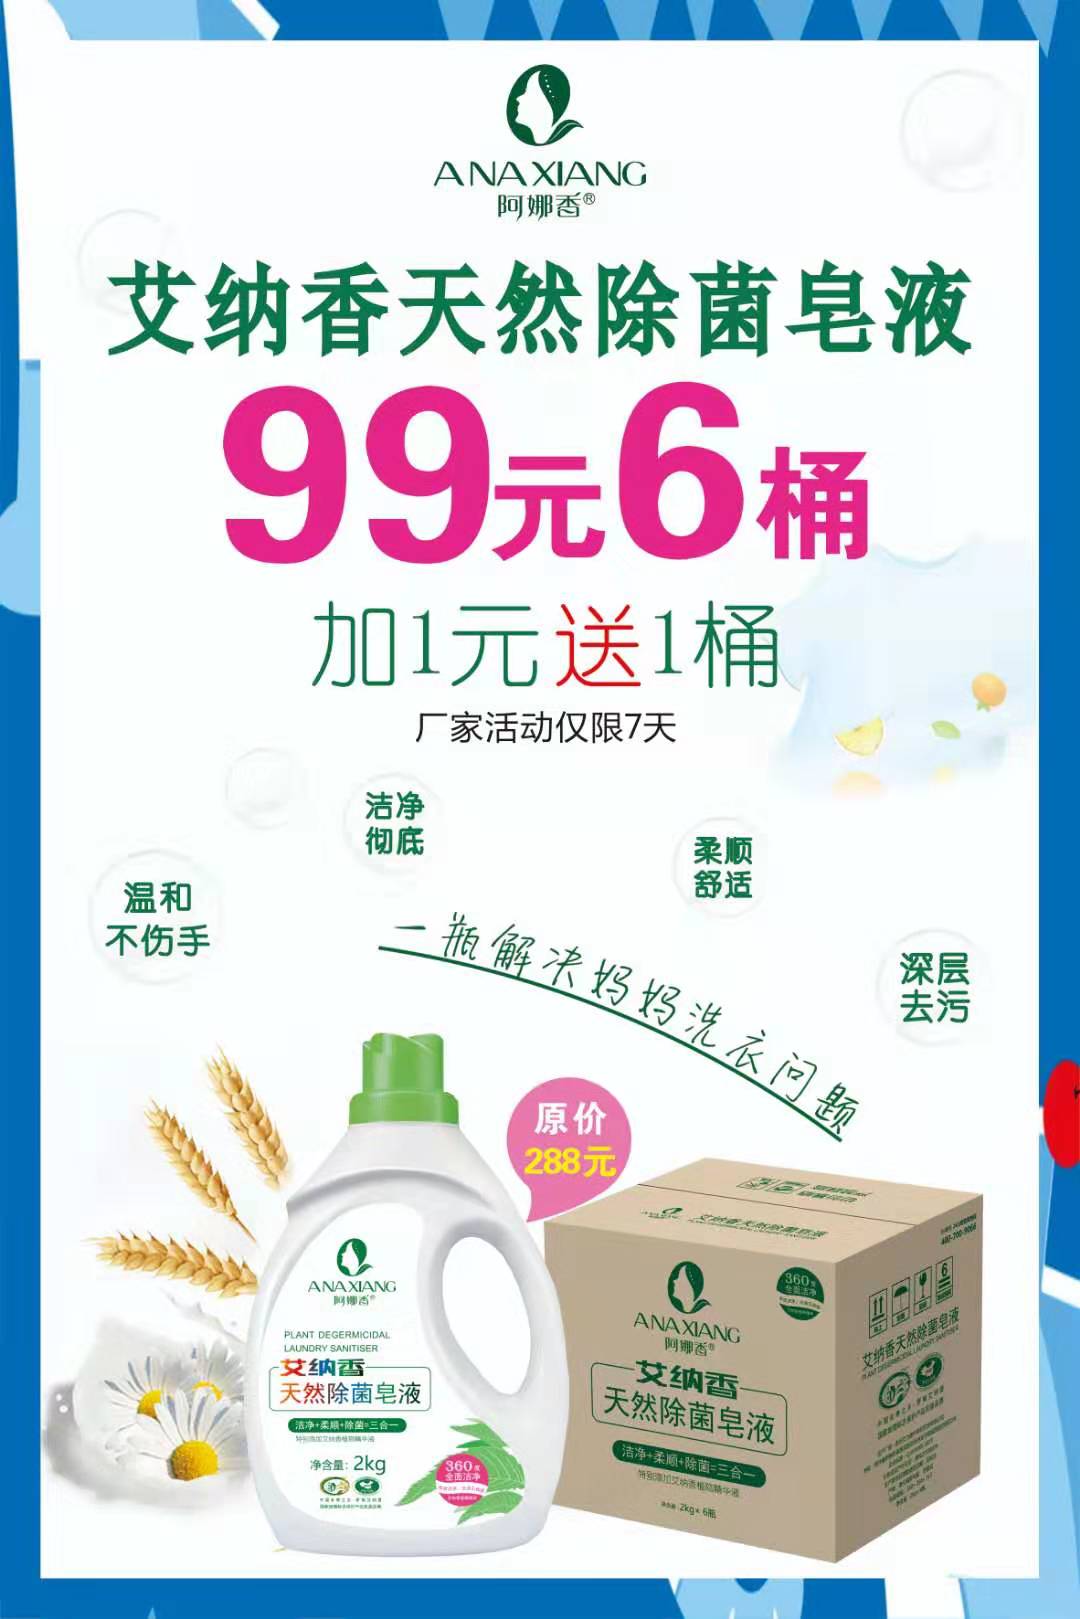 阿娜香新品-艾纳香天然除菌皂液成功面市1.jpg